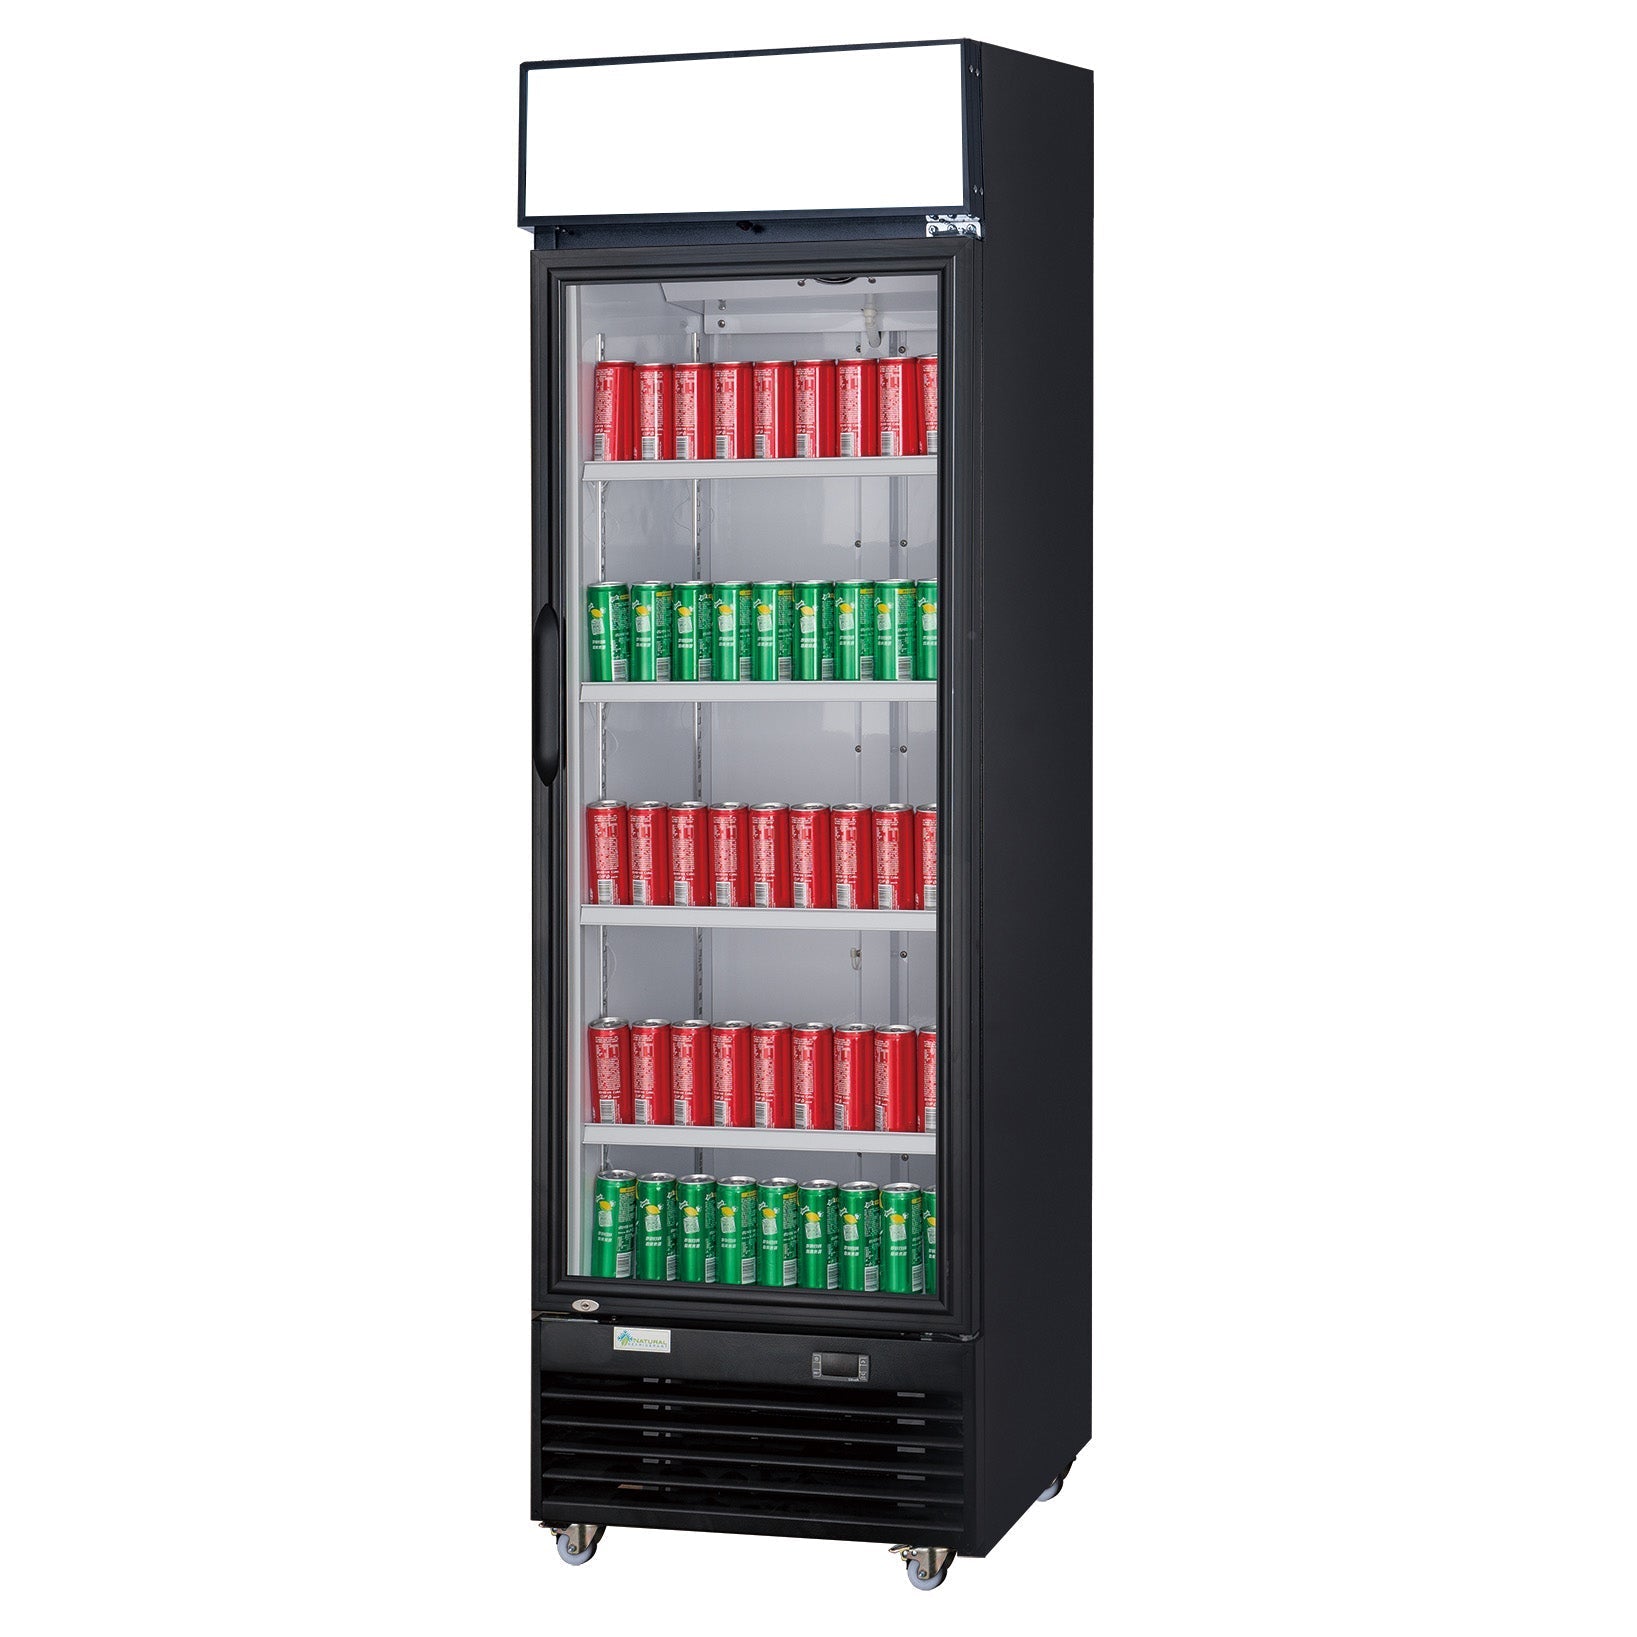 ChefAAA - TSM-15R Commercial Single Glass Swing Door Merchandiser Refrigerator